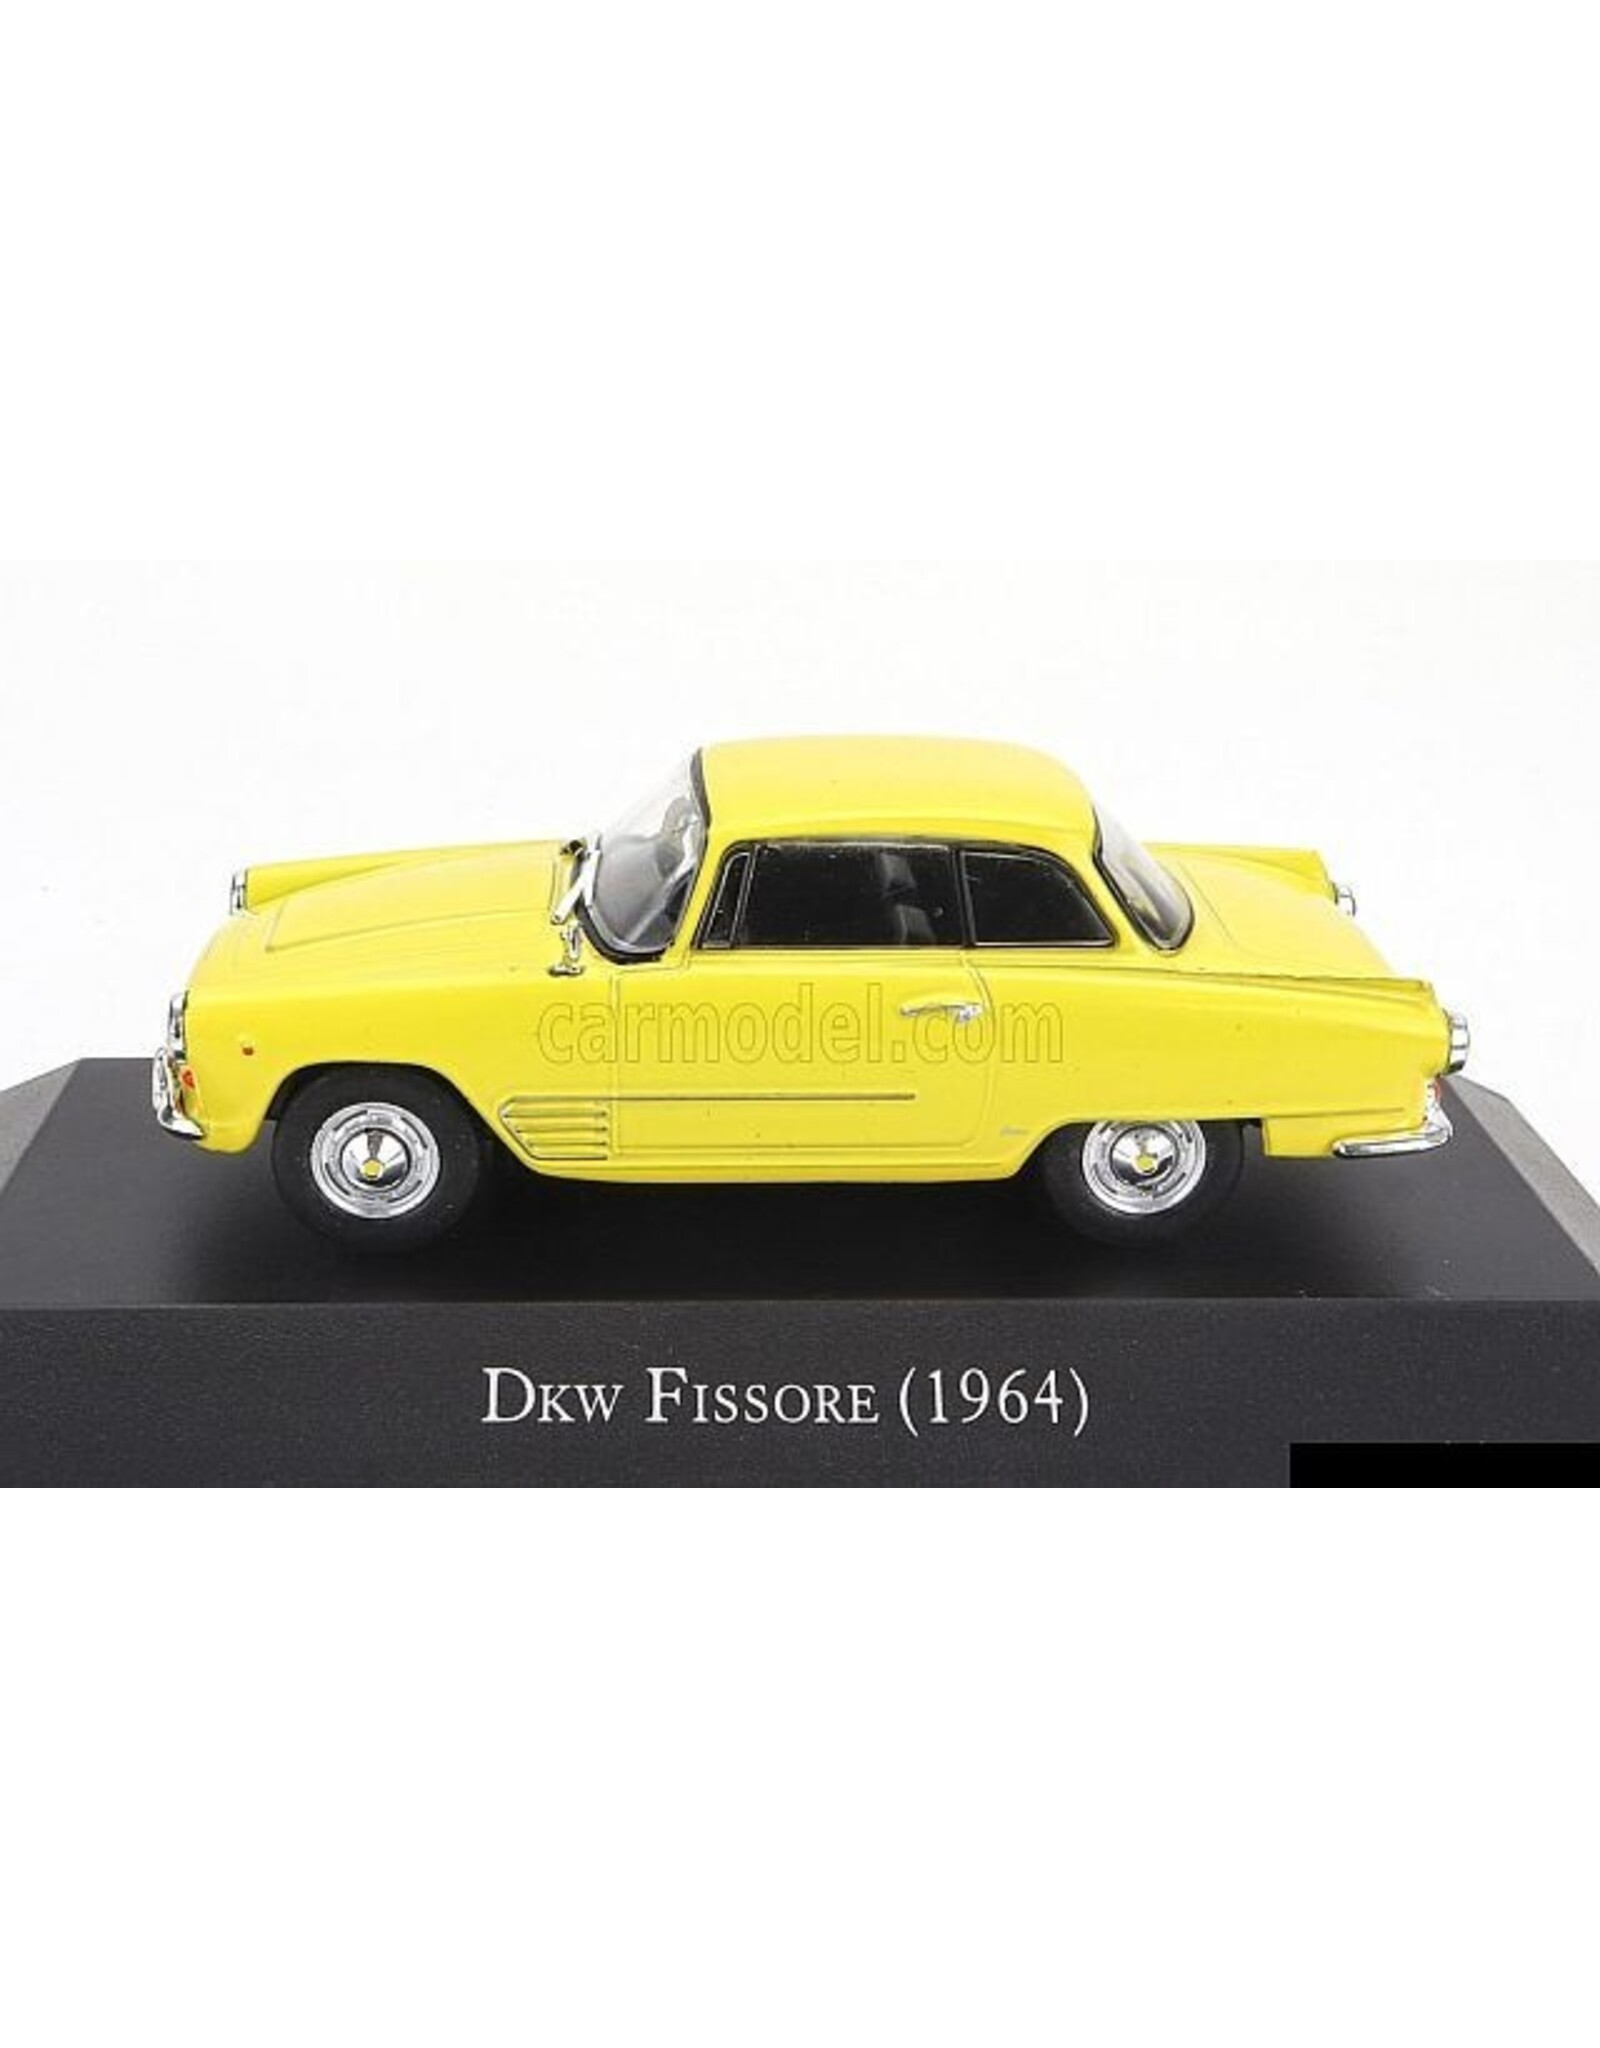 DKW DKW Fissore(1964)